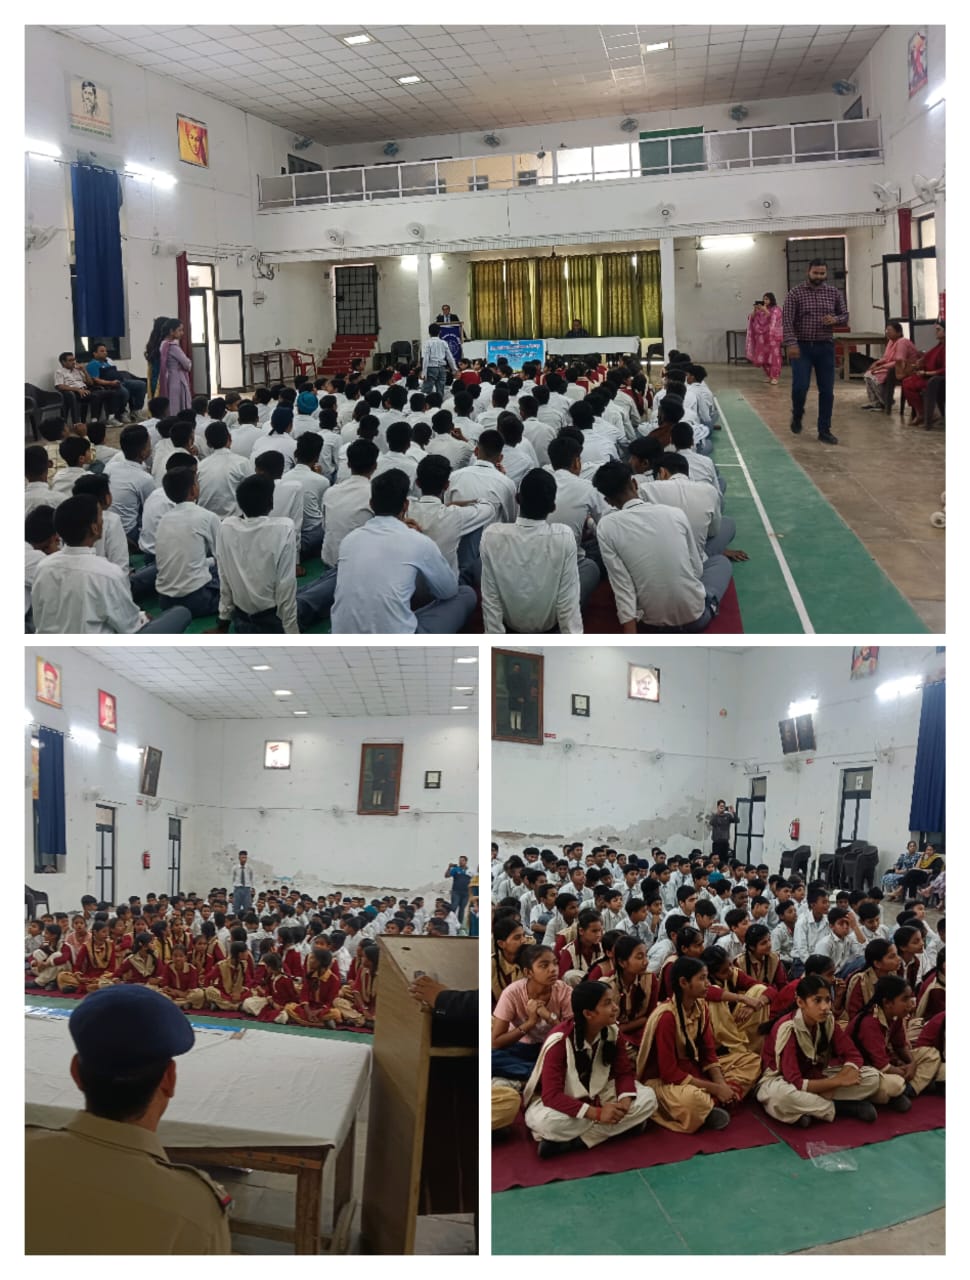 हिंदू नेशनल स्कूल में विधिक जागरूकता शिविर का आयोजन, दी गई ये जानकारी